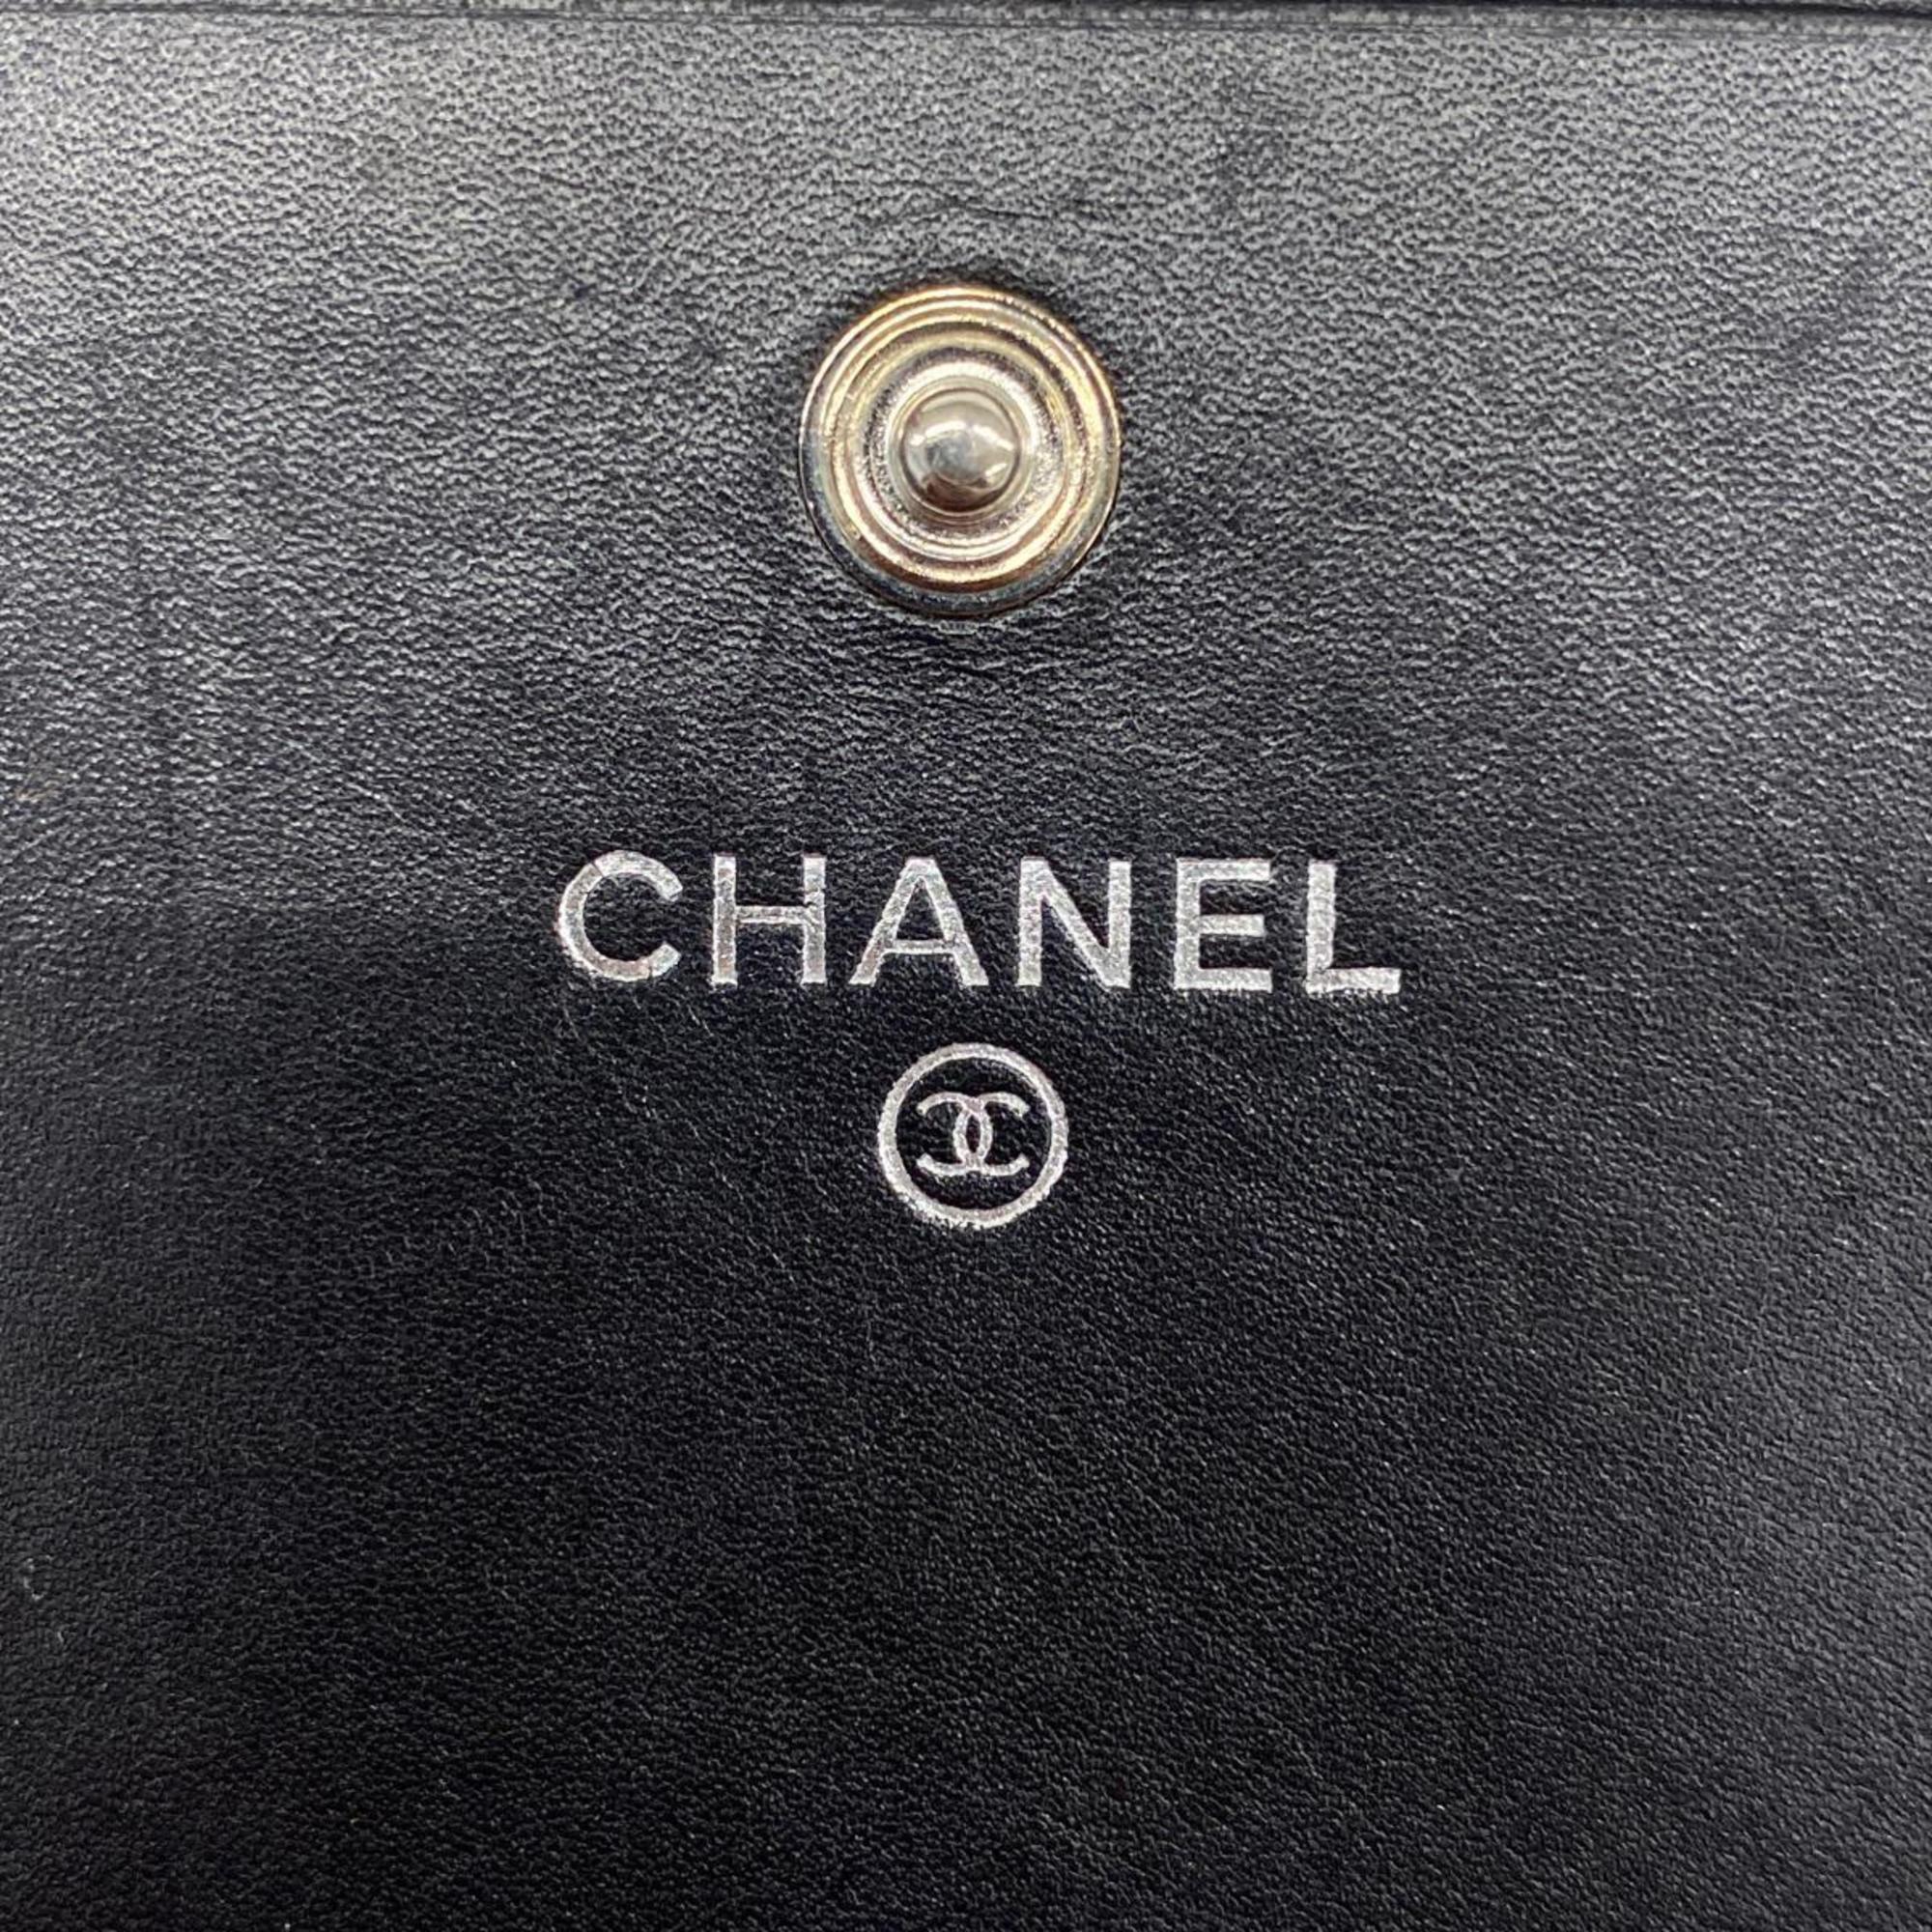 シャネル(Chanel) シャネル 長財布 カンボン ラムスキン ブラック ピンク   レディース